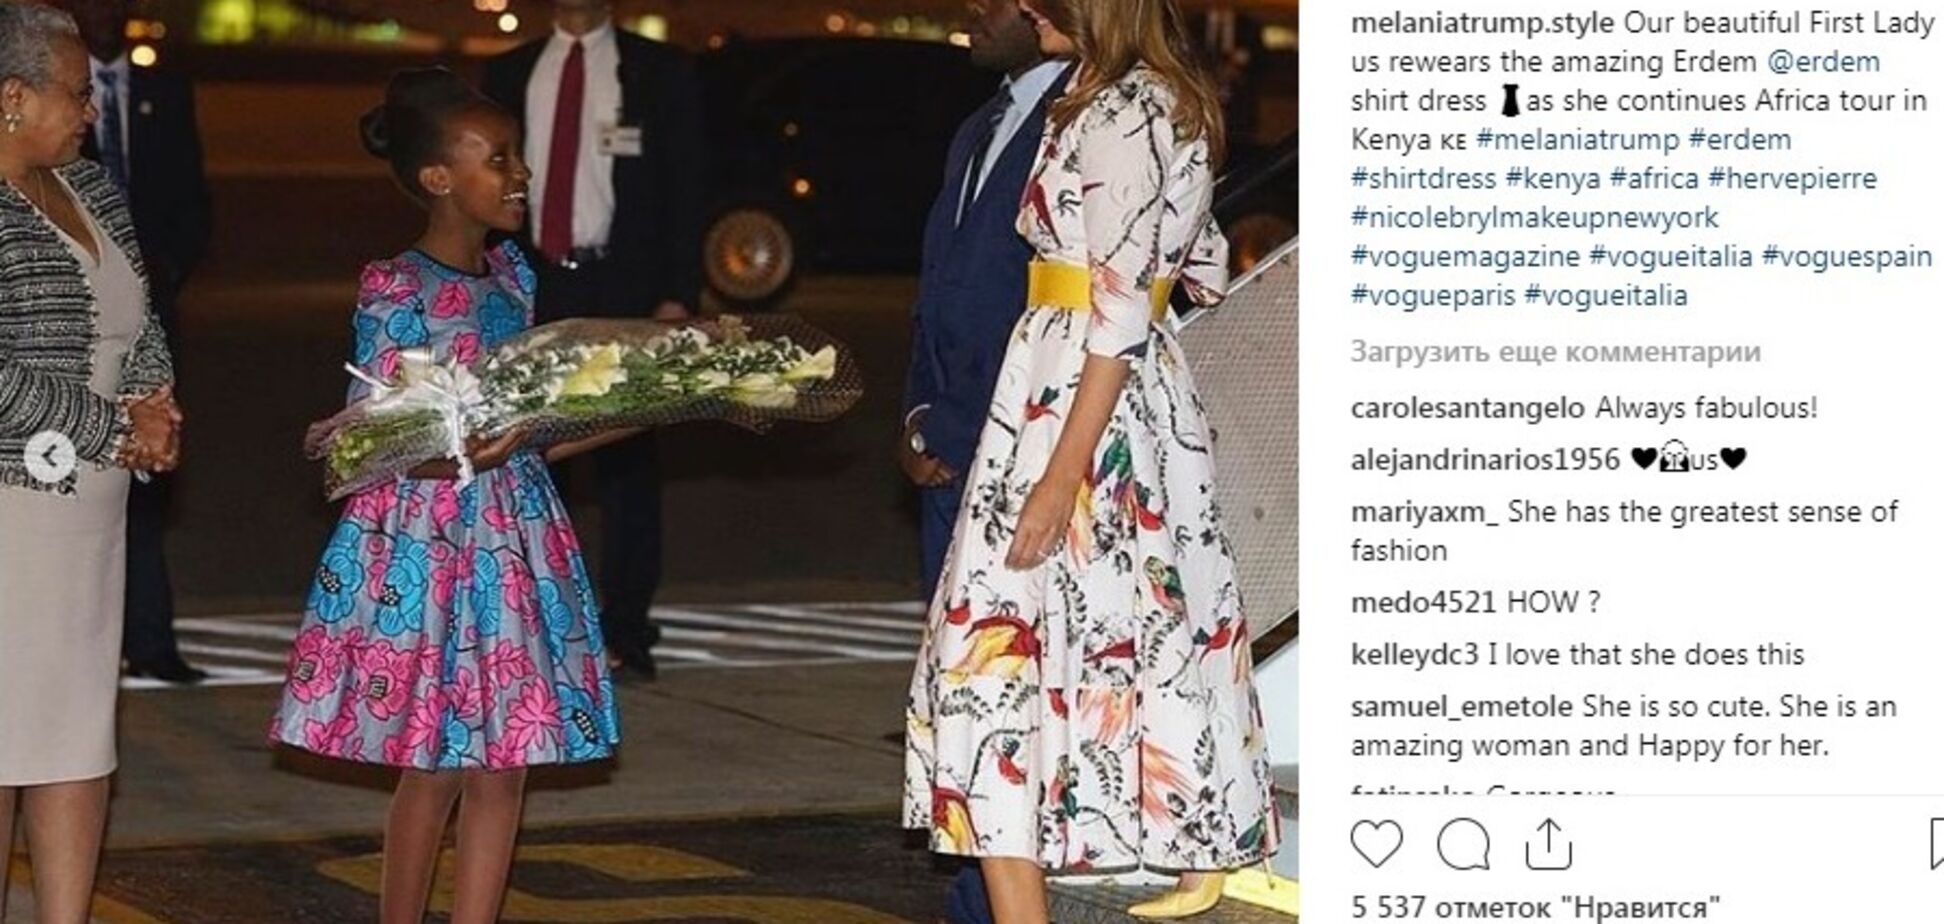 Мелания Трамп прилетела в Кению в прошлогоднем платье